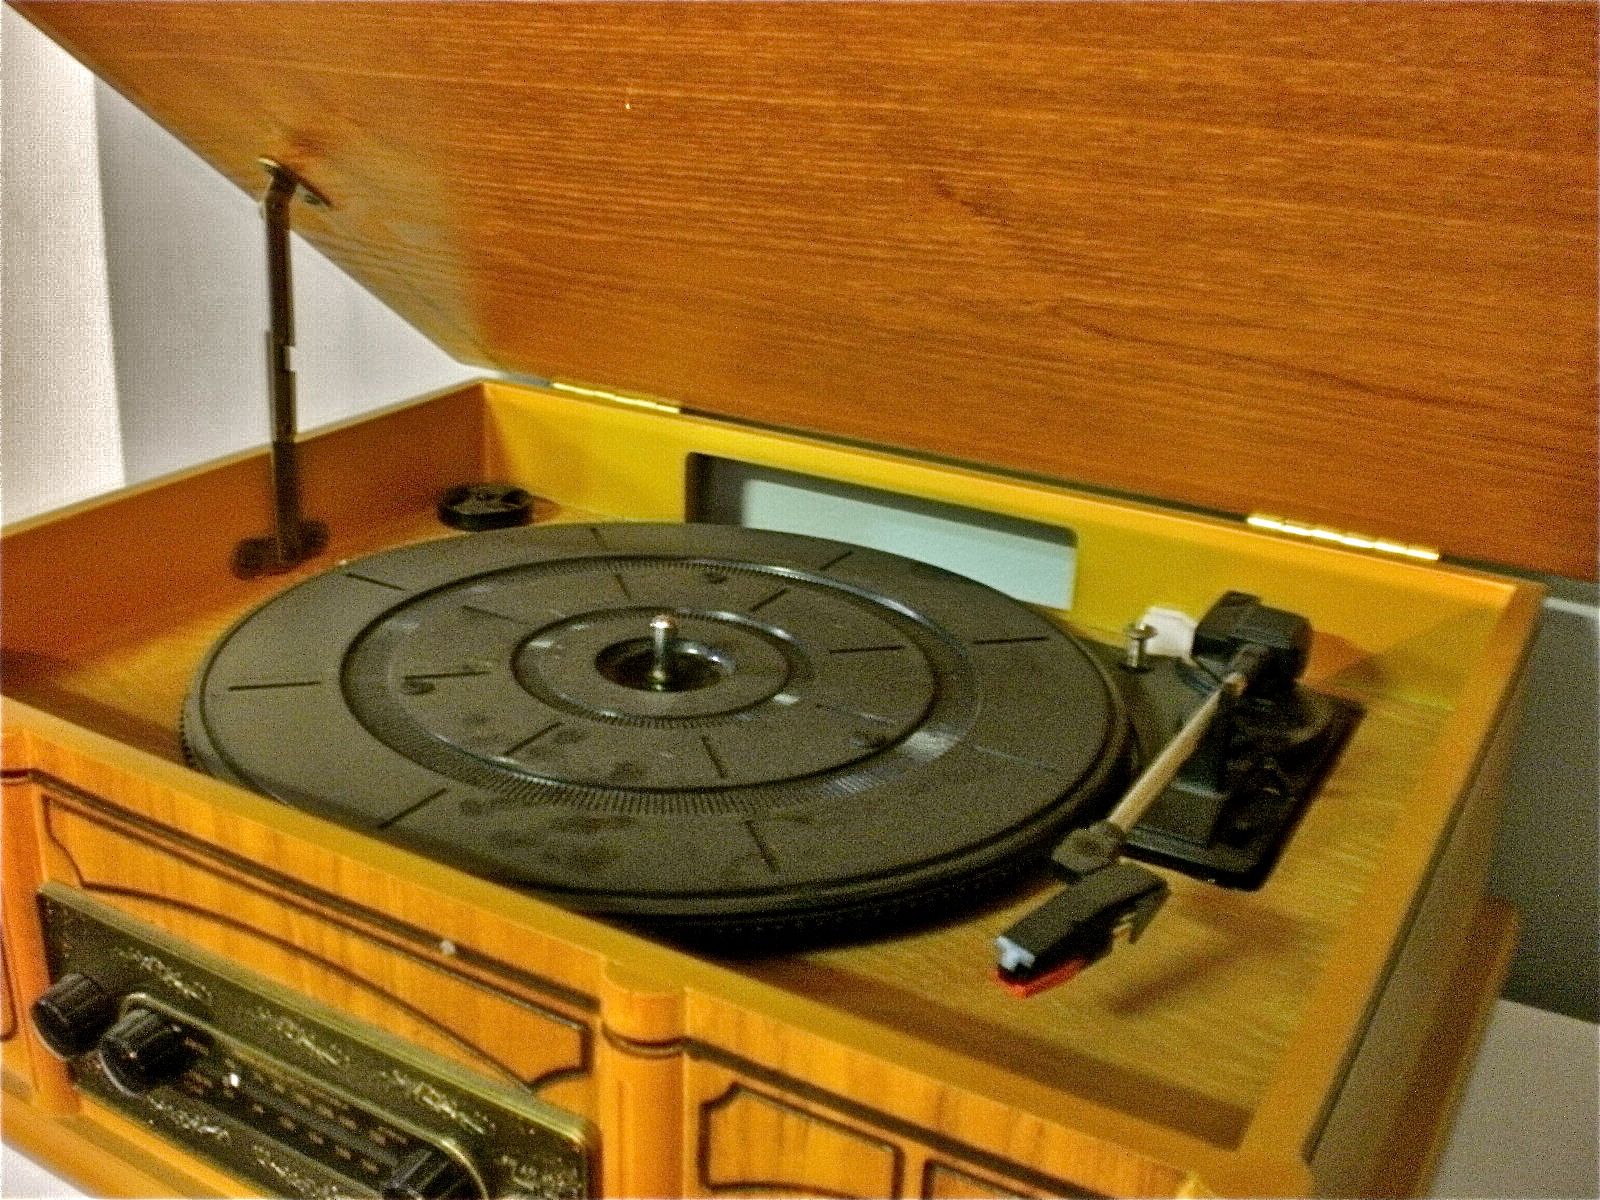 Treasure Trove of Loveable Goods: AM FM Radio & Turntable Vintage/Retro ...